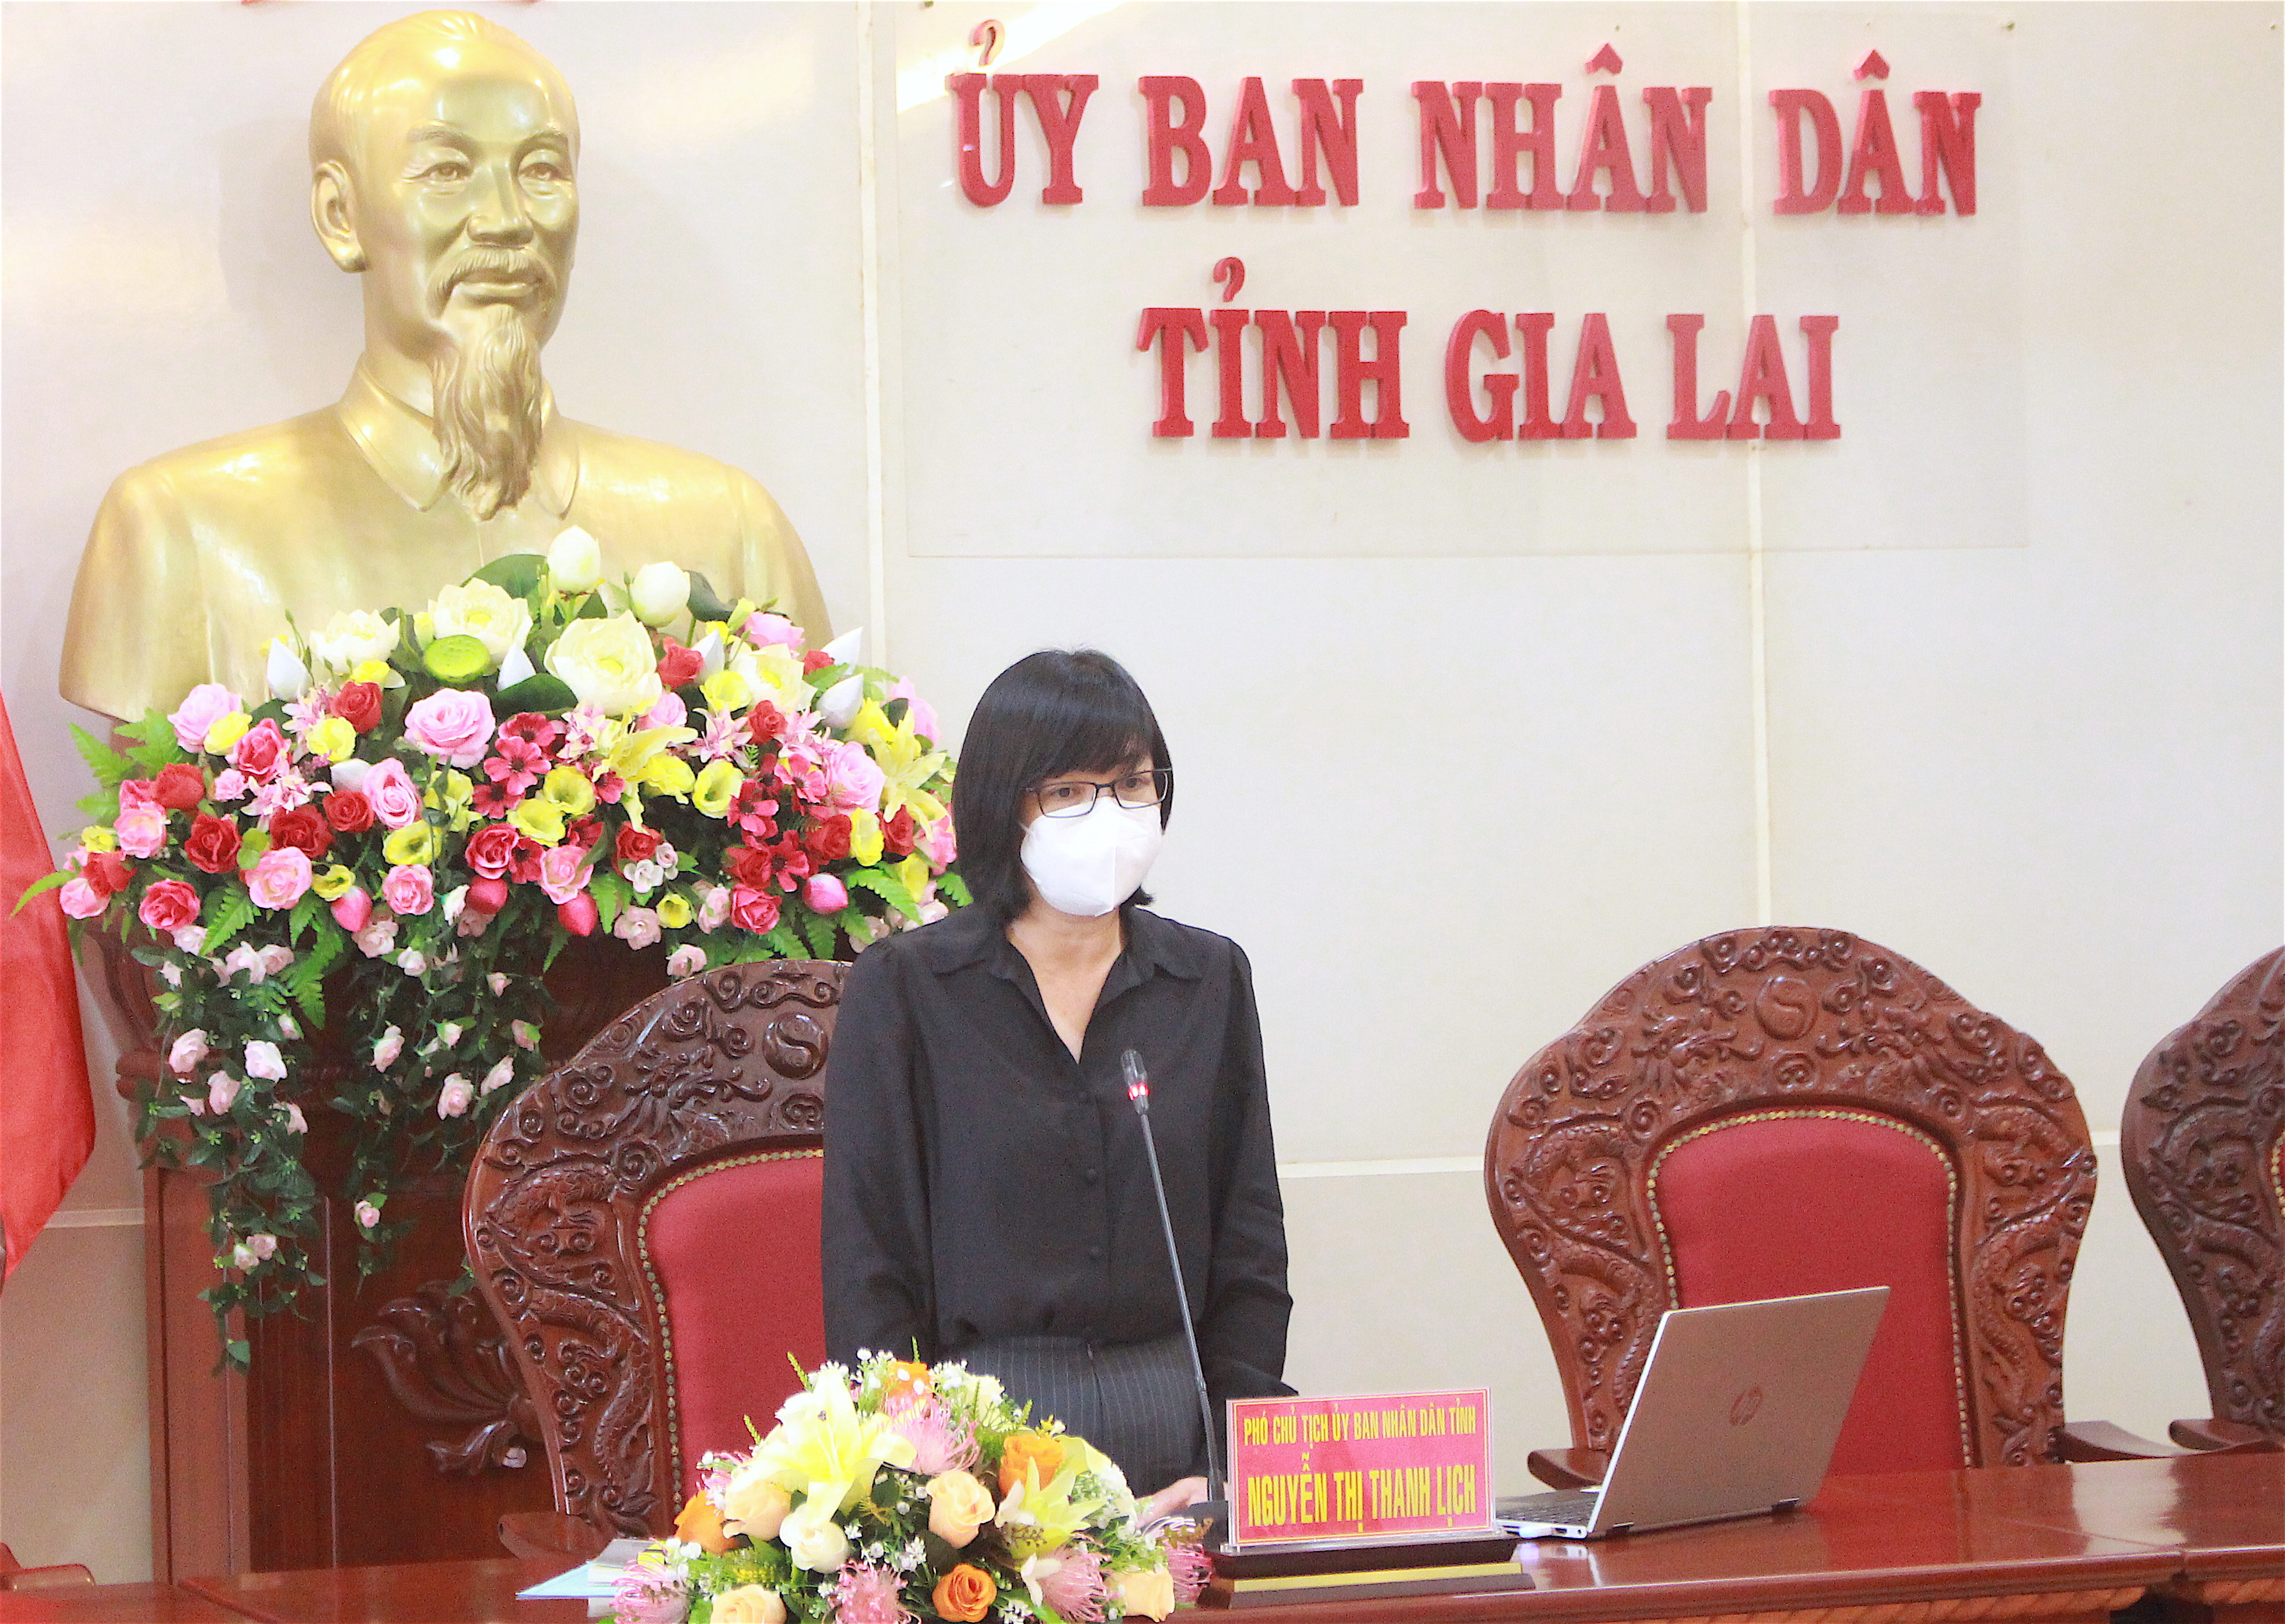 Phó Chủ tịch UBND tỉnh Nguyễn Thị Thanh Lịch kết luận cuộc họp. Ảnh: Mộc Trà